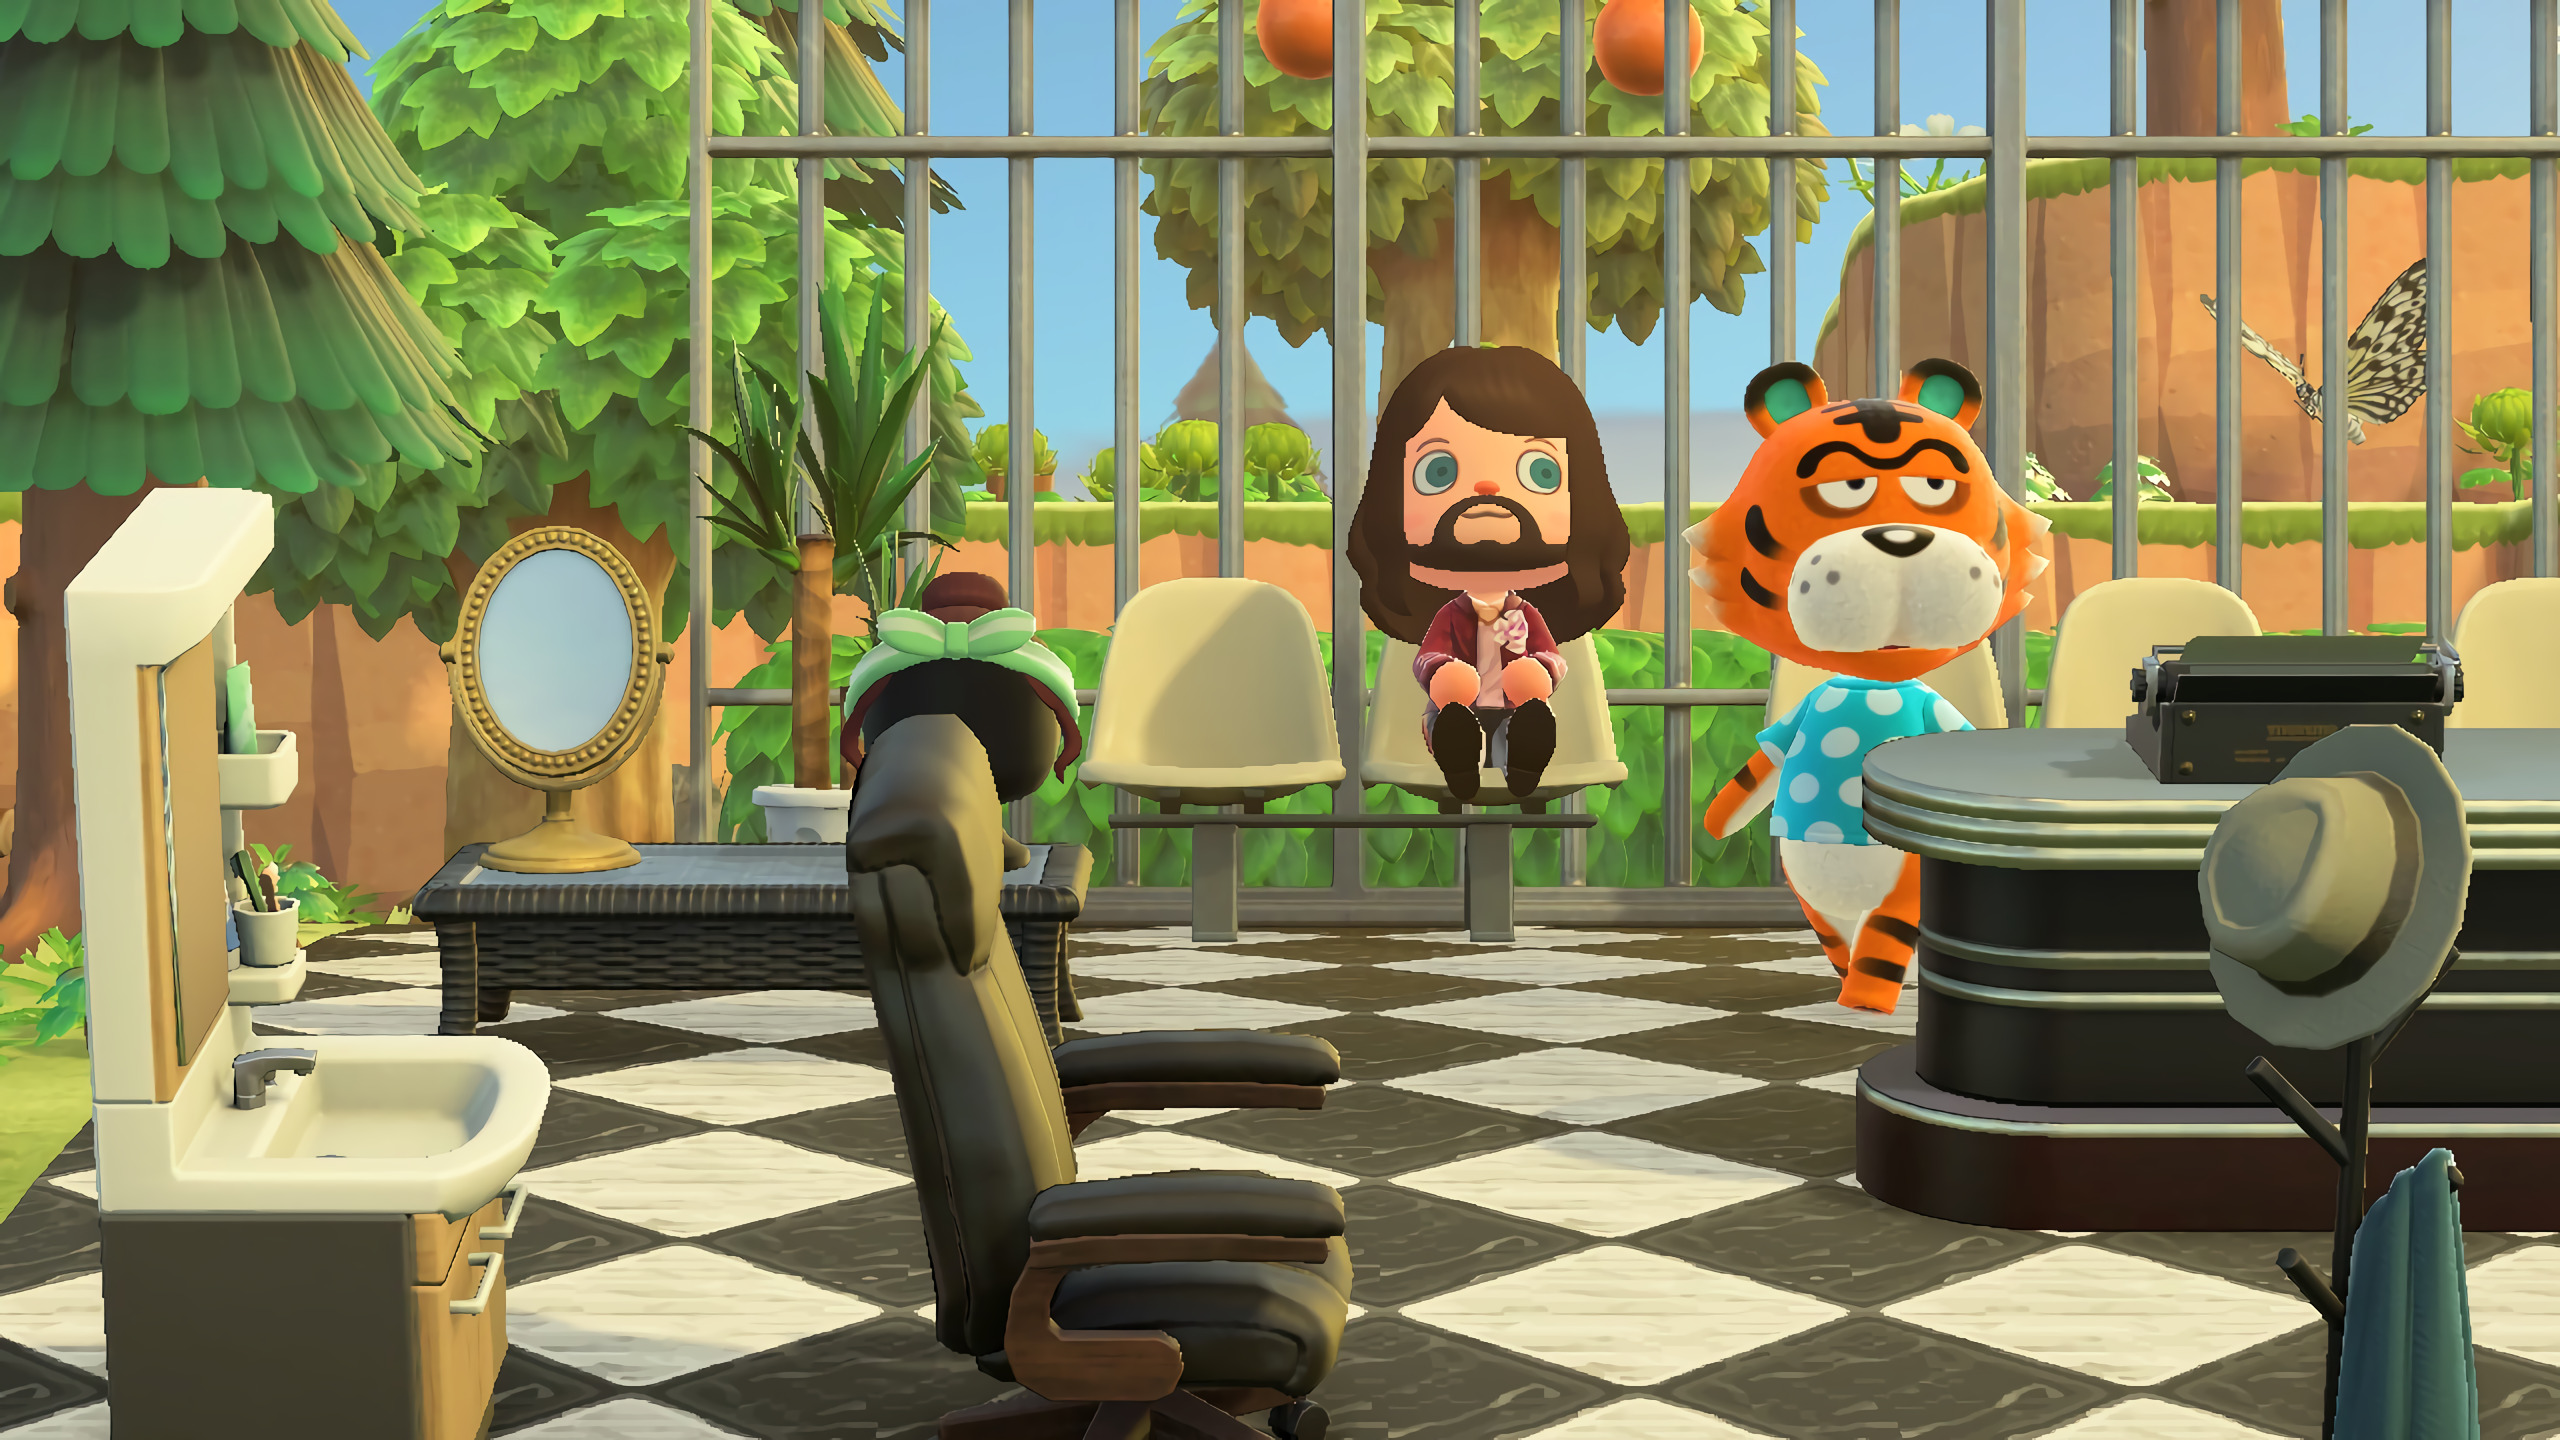 Gucci crea su propia isla en Animal Crossing con anfitrión de lujo